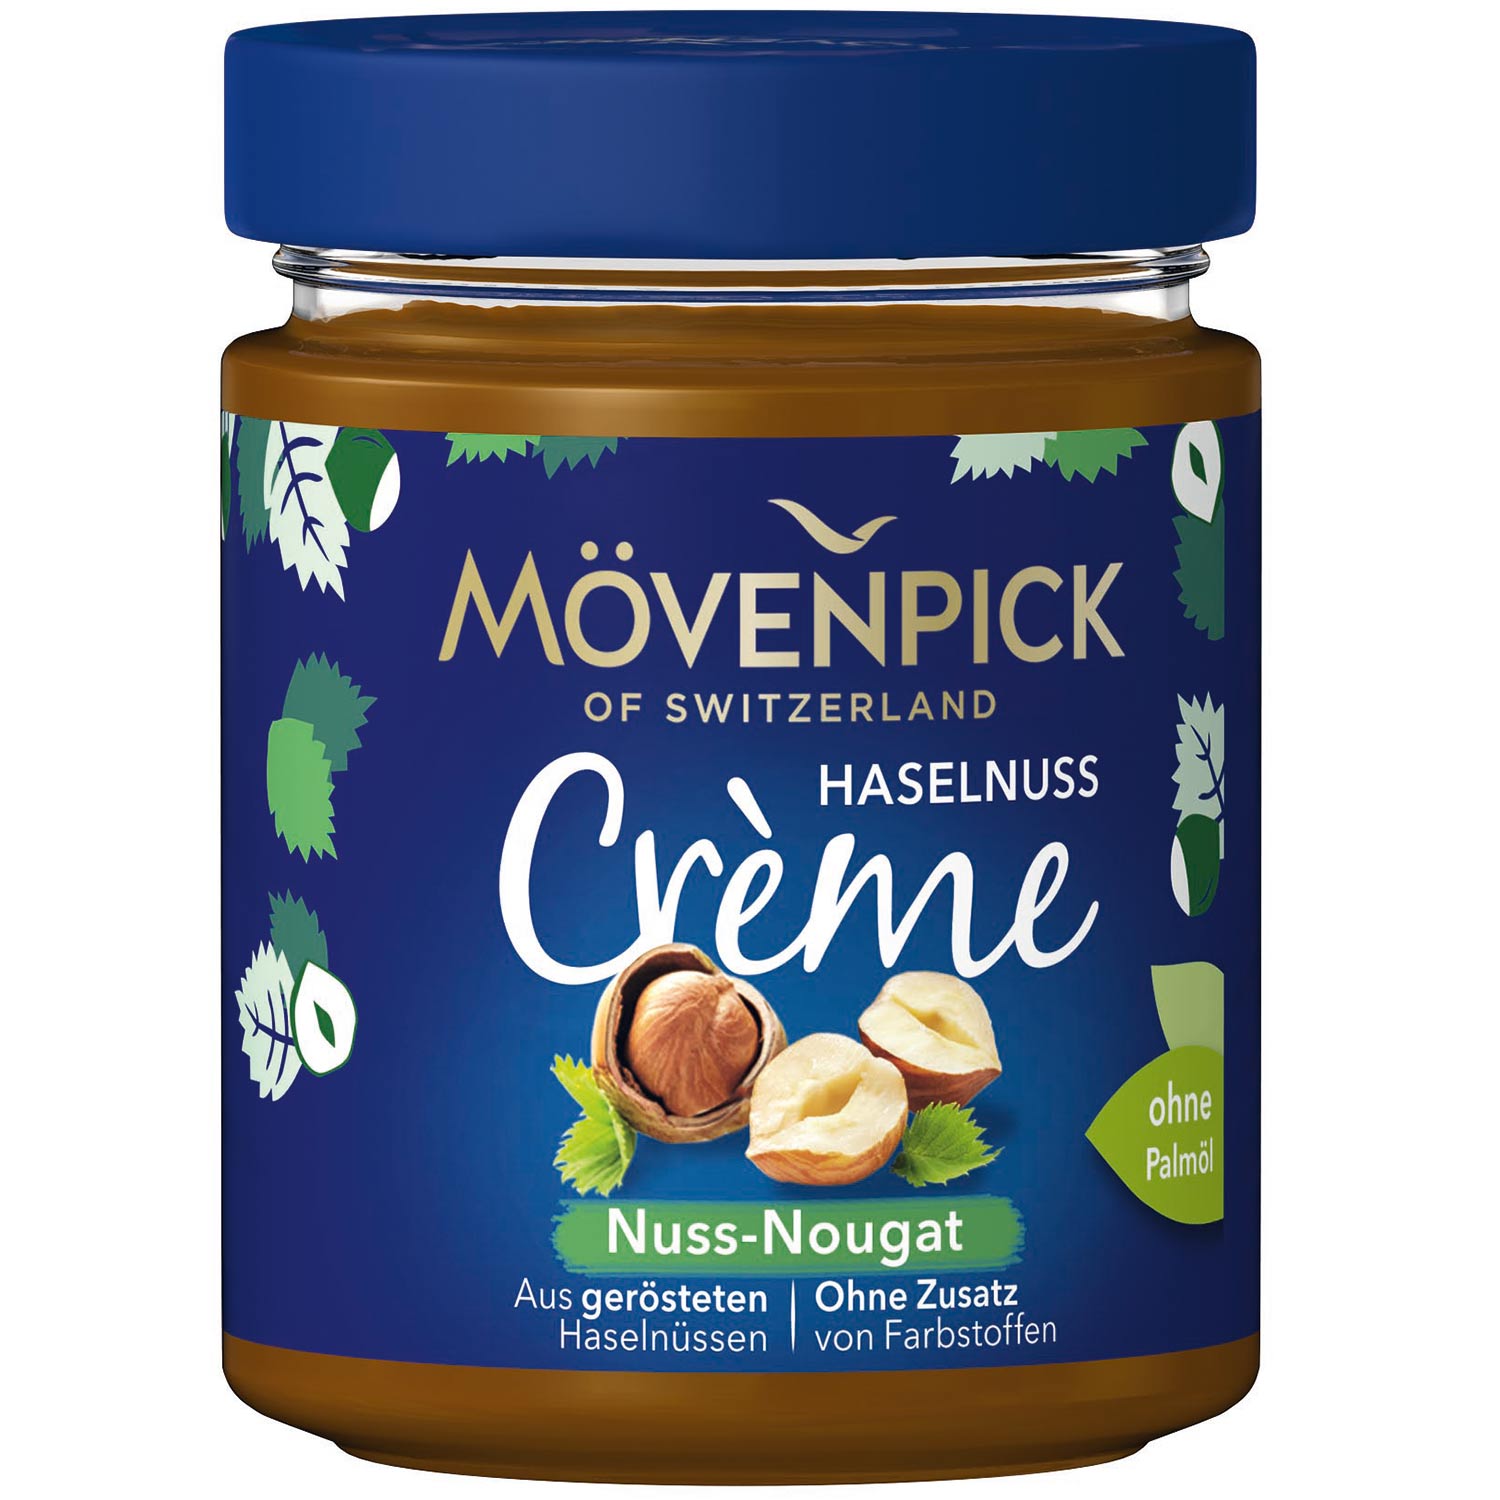 Mövenpick Haselnuss Crème Nuss-Nougat 300g | Online kaufen im World of ...